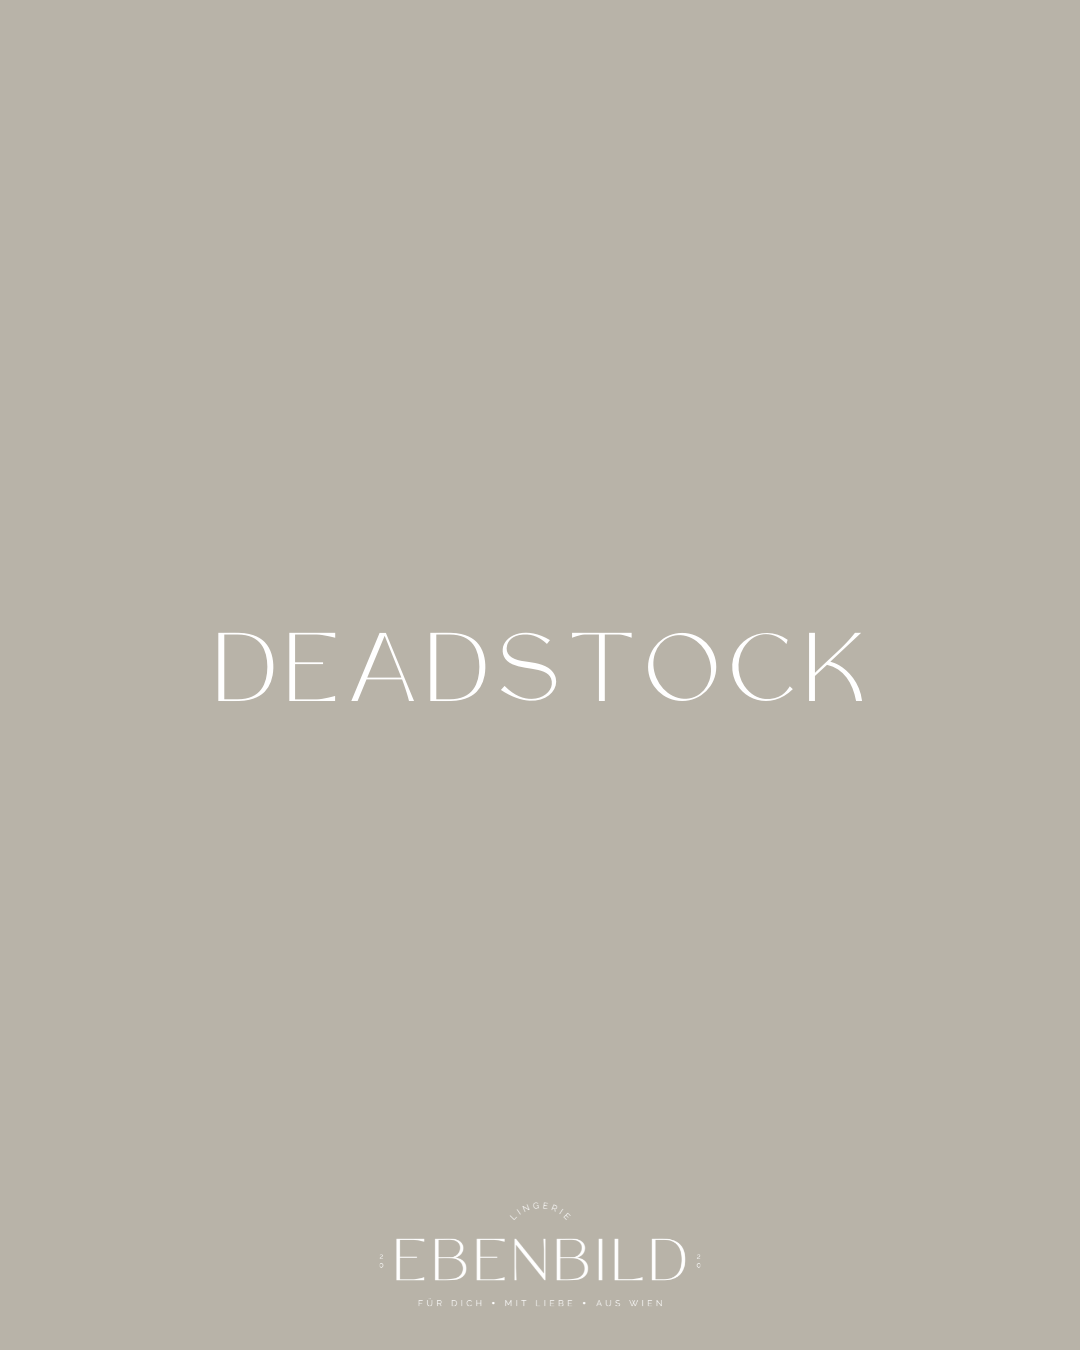 Deadstock – was ist das?